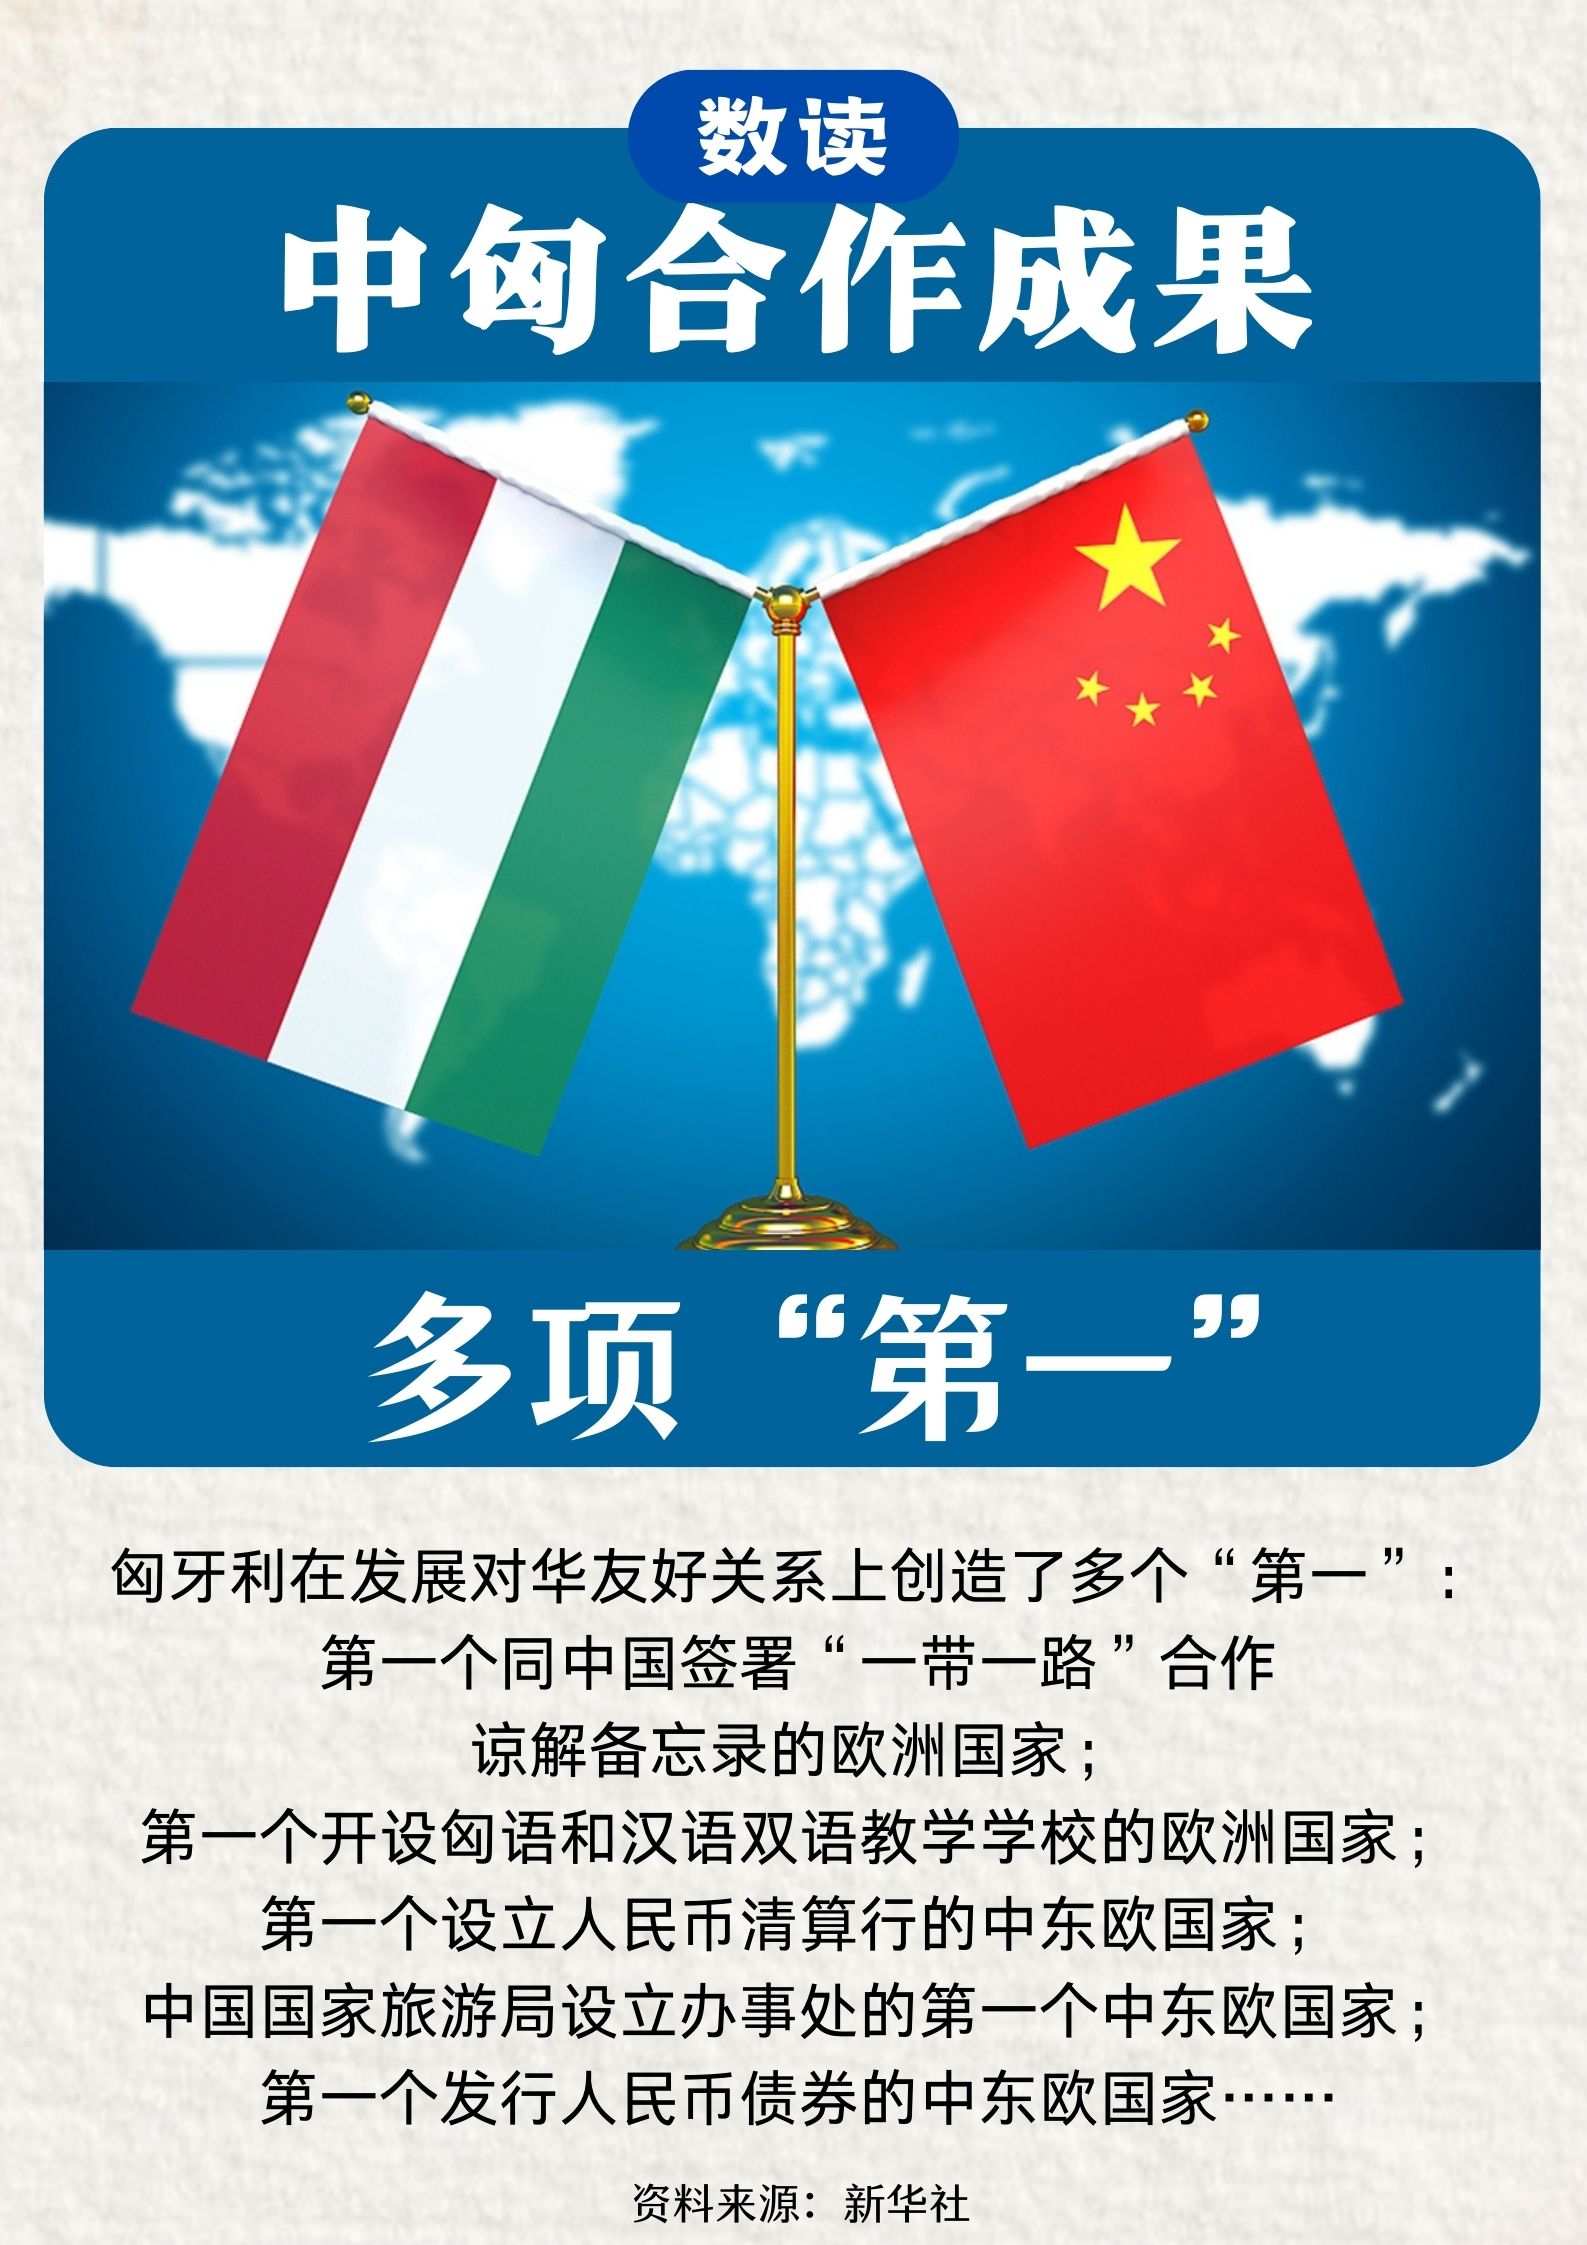 数读中国与匈牙利合作成果